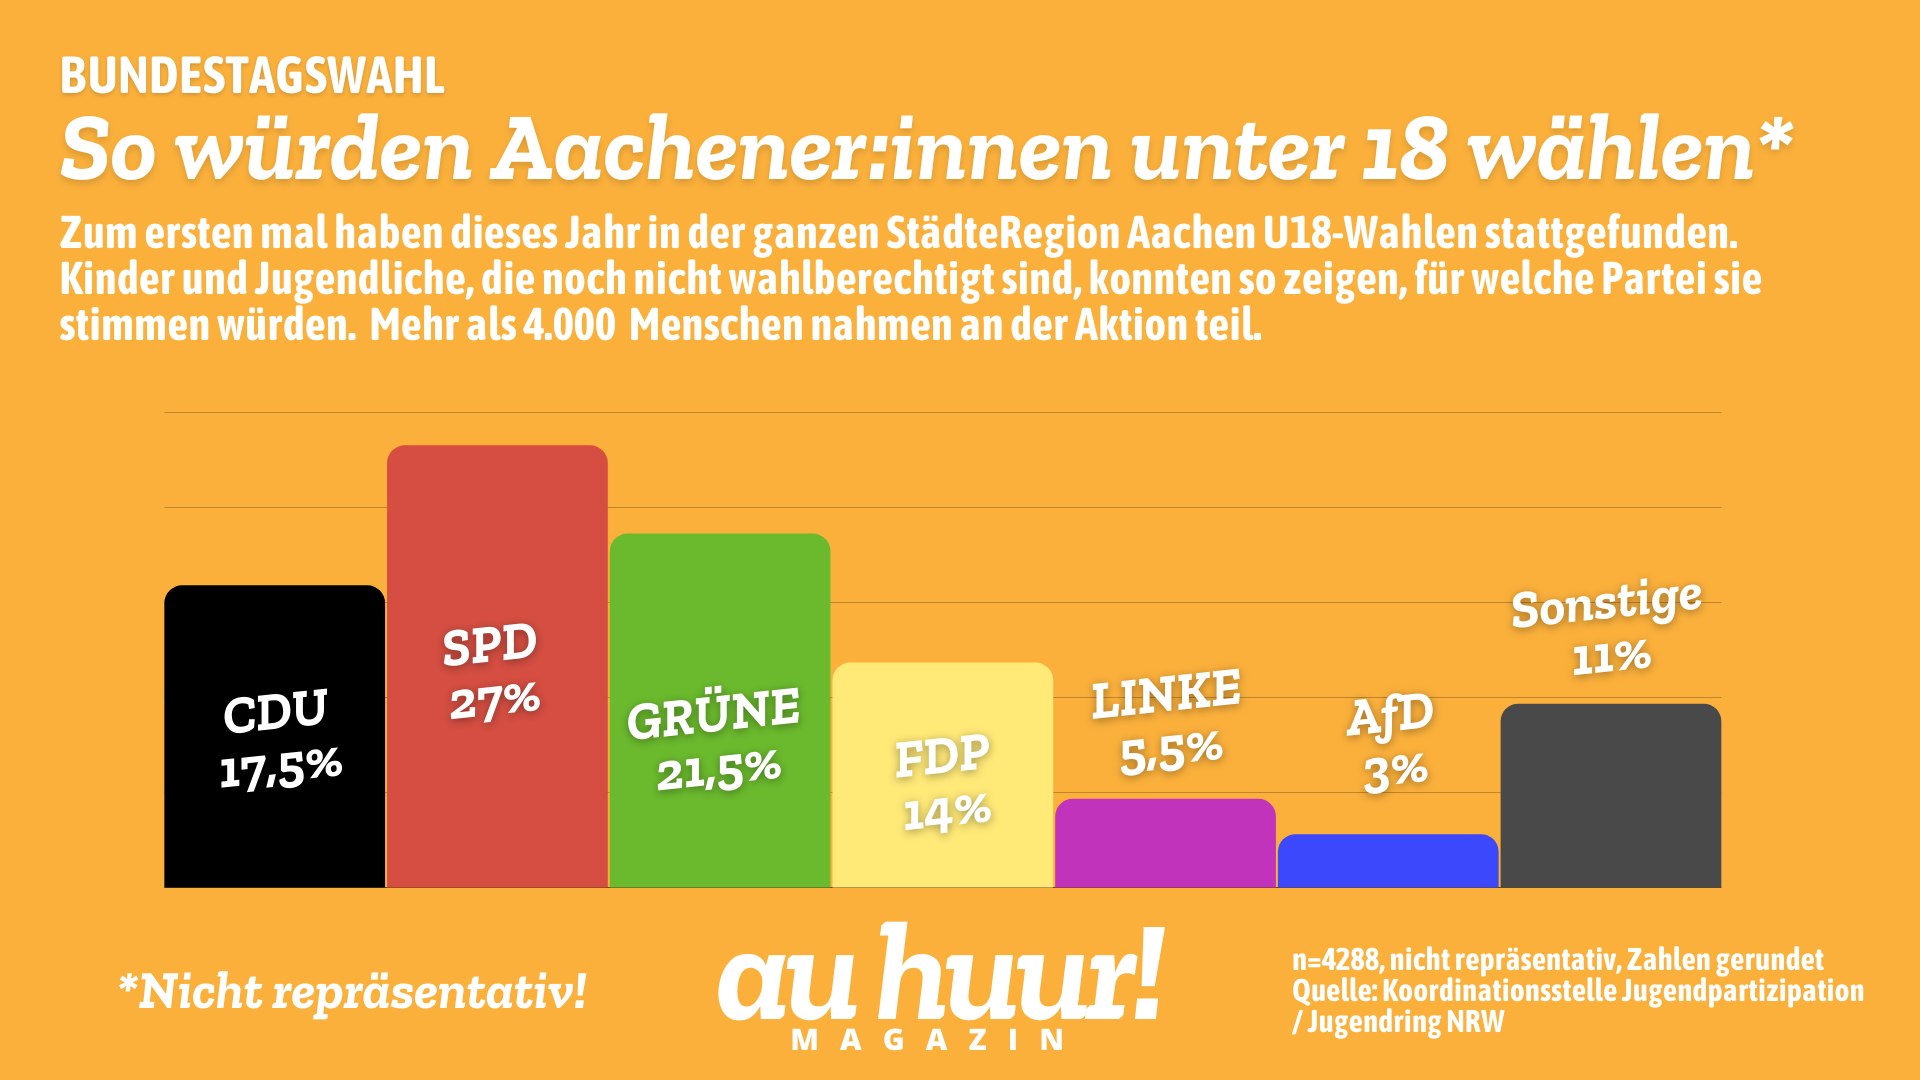 U18-Wahl: So würden die jungen Aachener:innen wählen